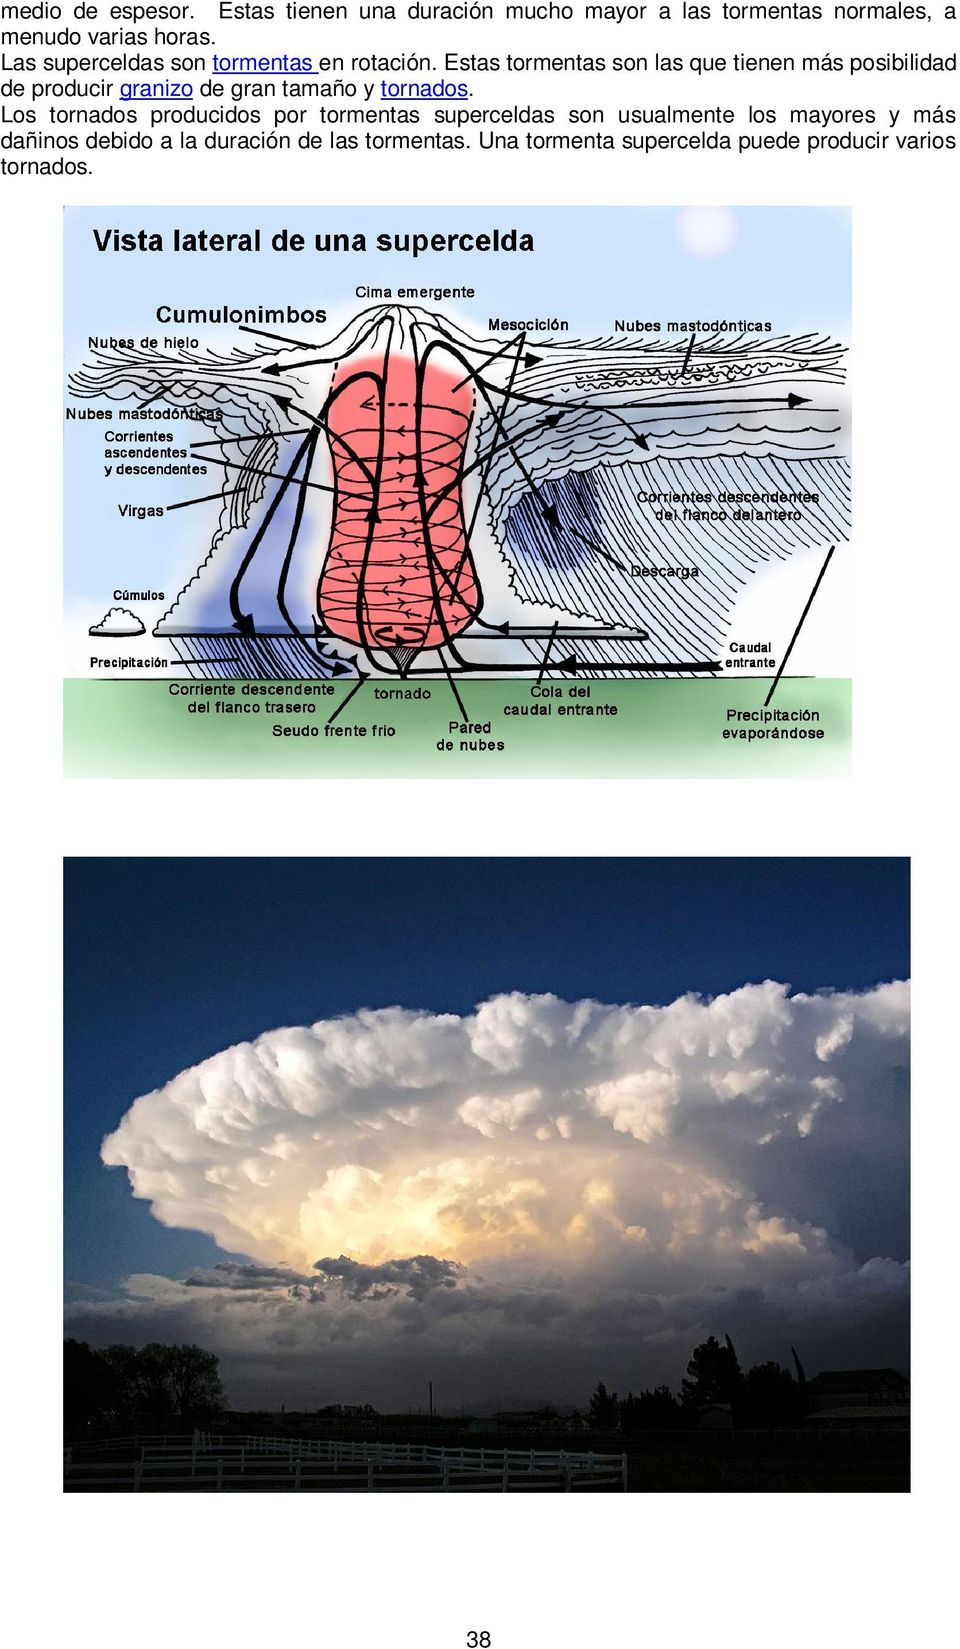 Estas tormentas son las que tienen más posibilidad de producir granizo de gran tamaño y tornados.